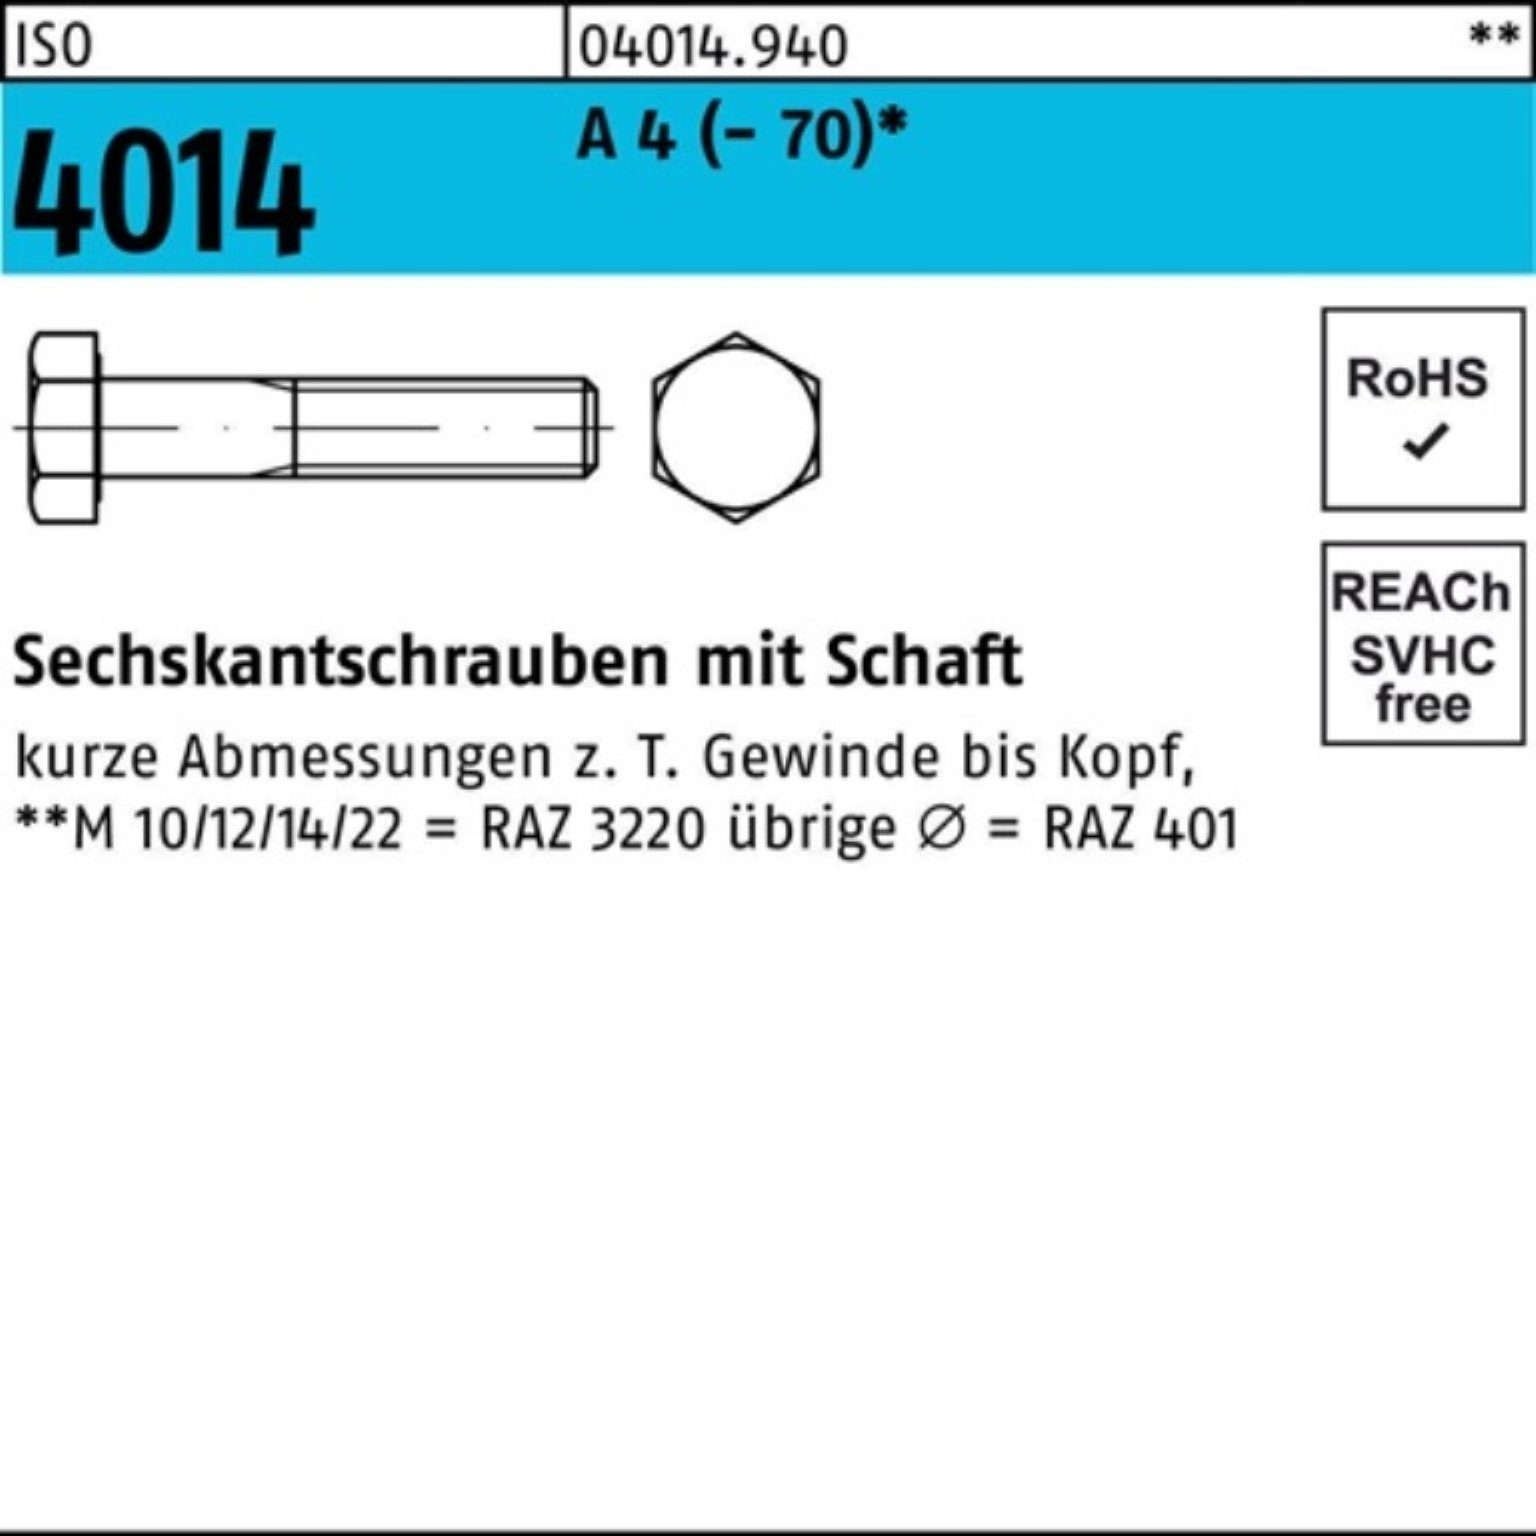 Pack Stück Schaft Sechskantschraube 4 Bufab ISO ISO 1 260 M24x 4014 100er Sechskantschraube A